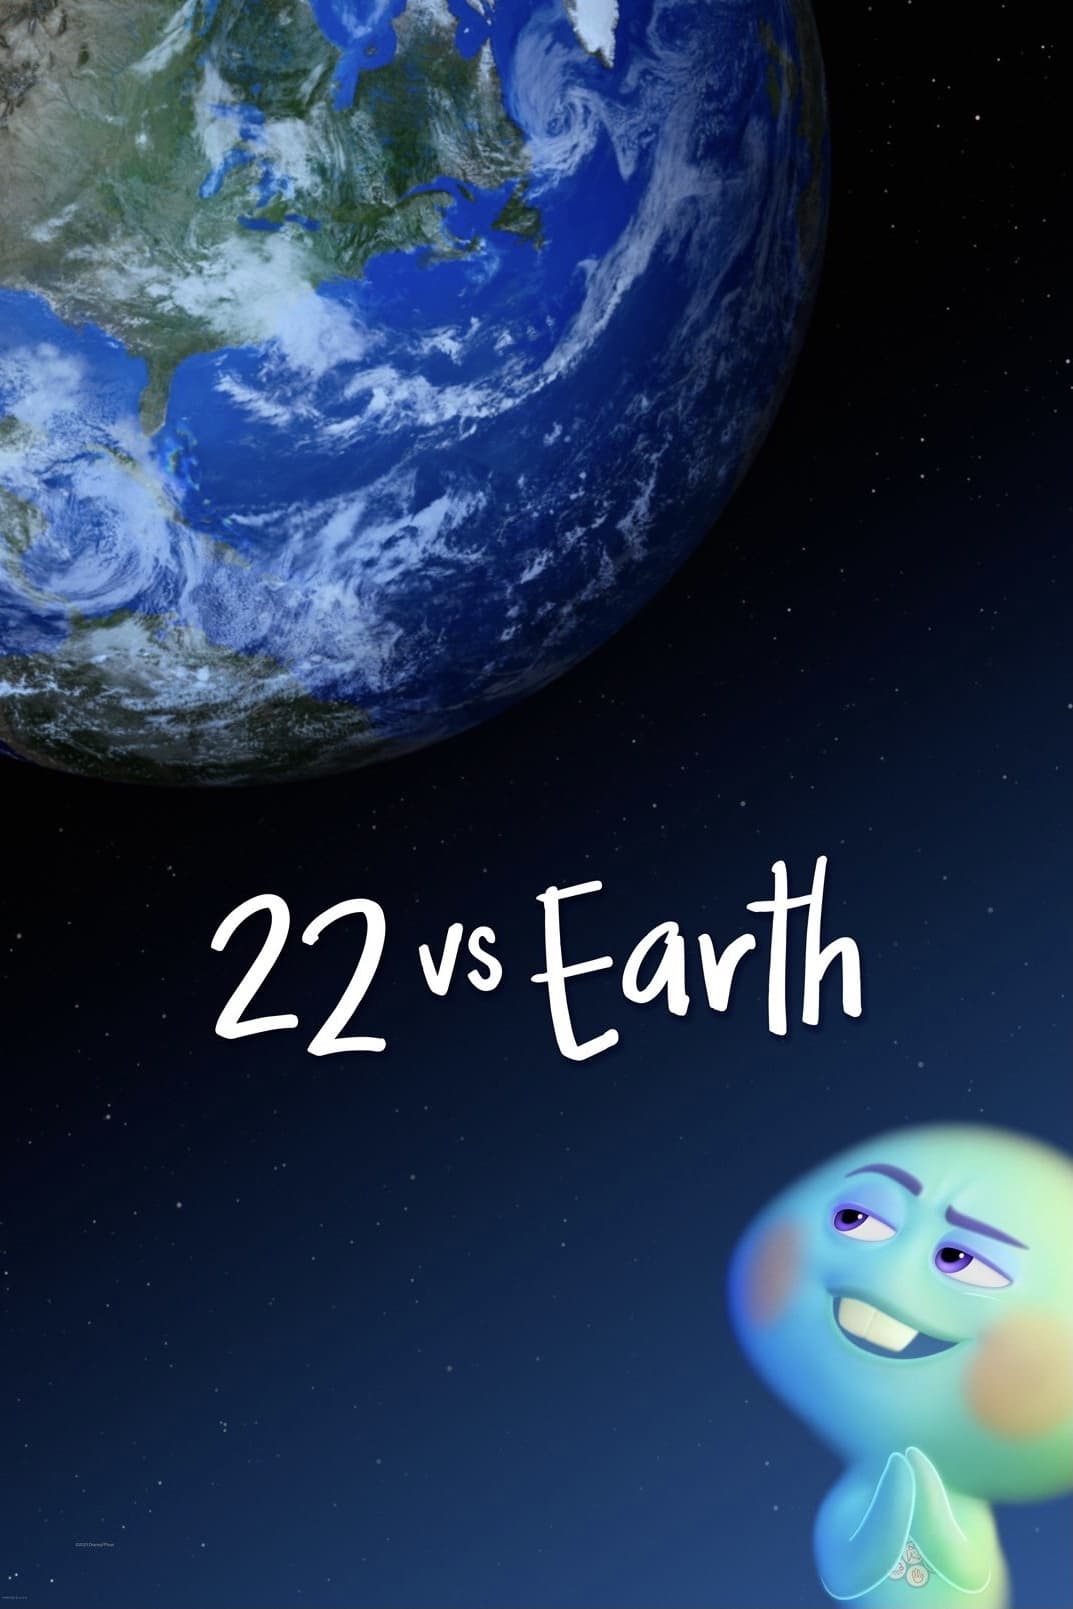 22 gegen die Erde